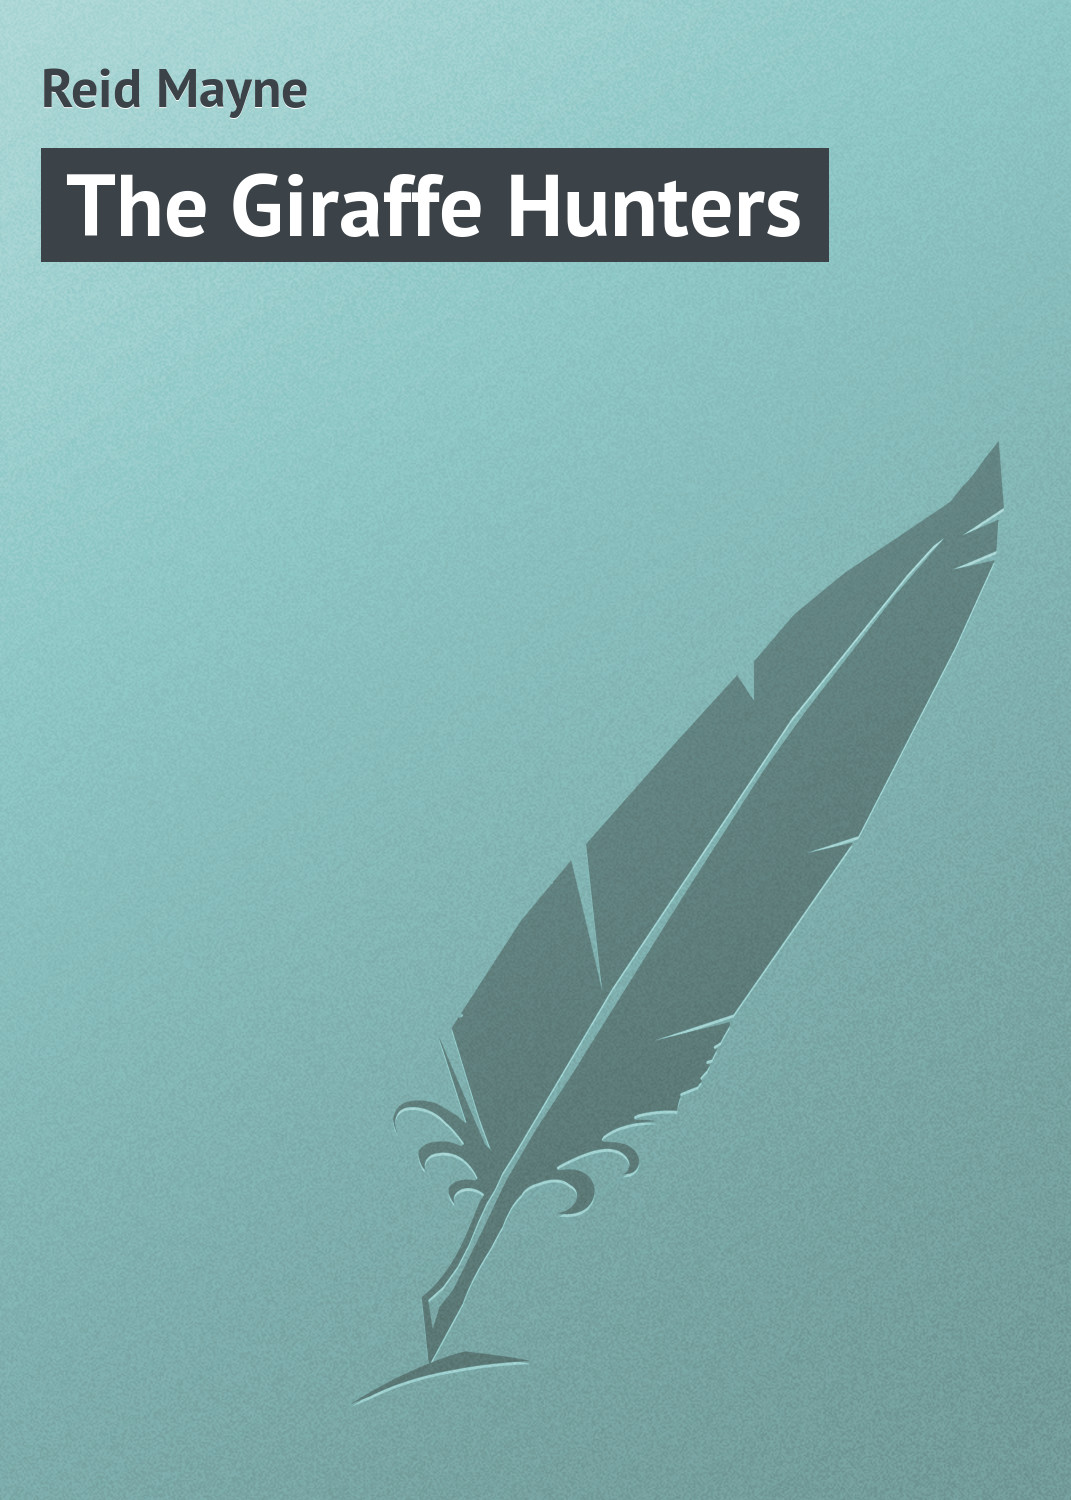 Книга The Giraffe Hunters из серии , созданная Mayne Reid, может относится к жанру Иностранные языки, Зарубежная классика. Стоимость электронной книги The Giraffe Hunters с идентификатором 23158523 составляет 5.99 руб.